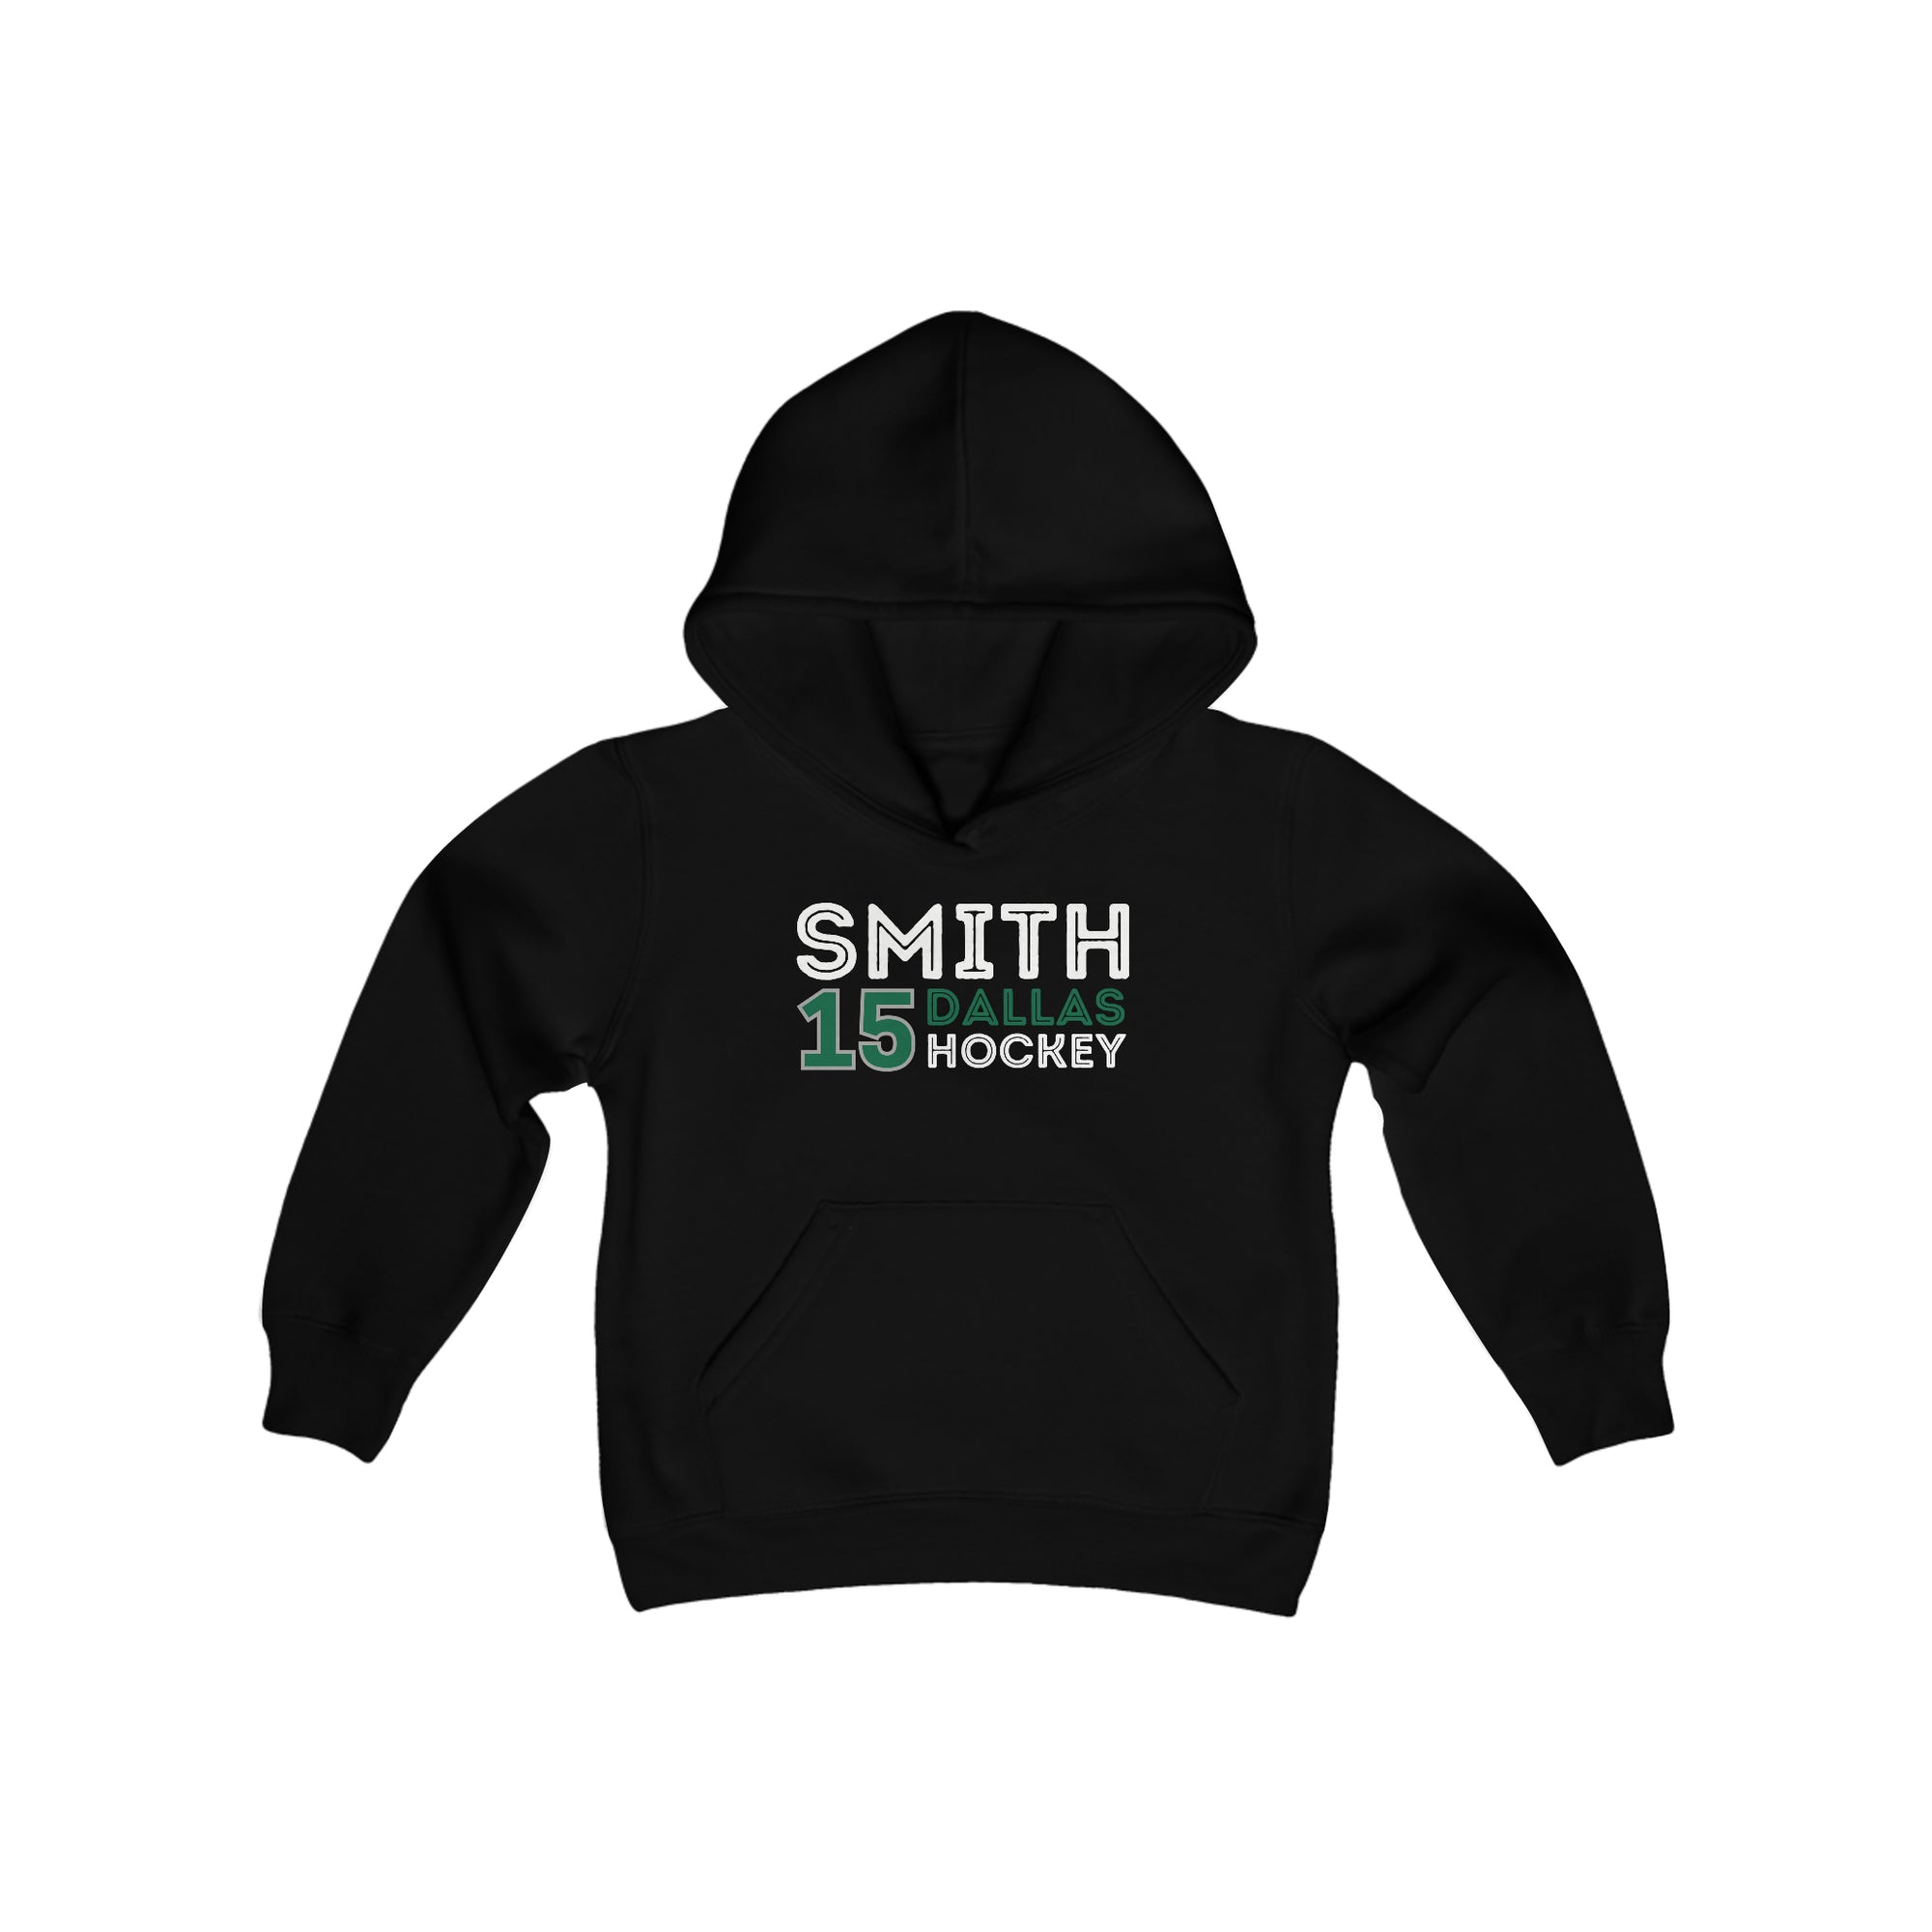 Smith 15 Dallas Hockey Grafitti Wall Design Youth Hooded Sweatshirt